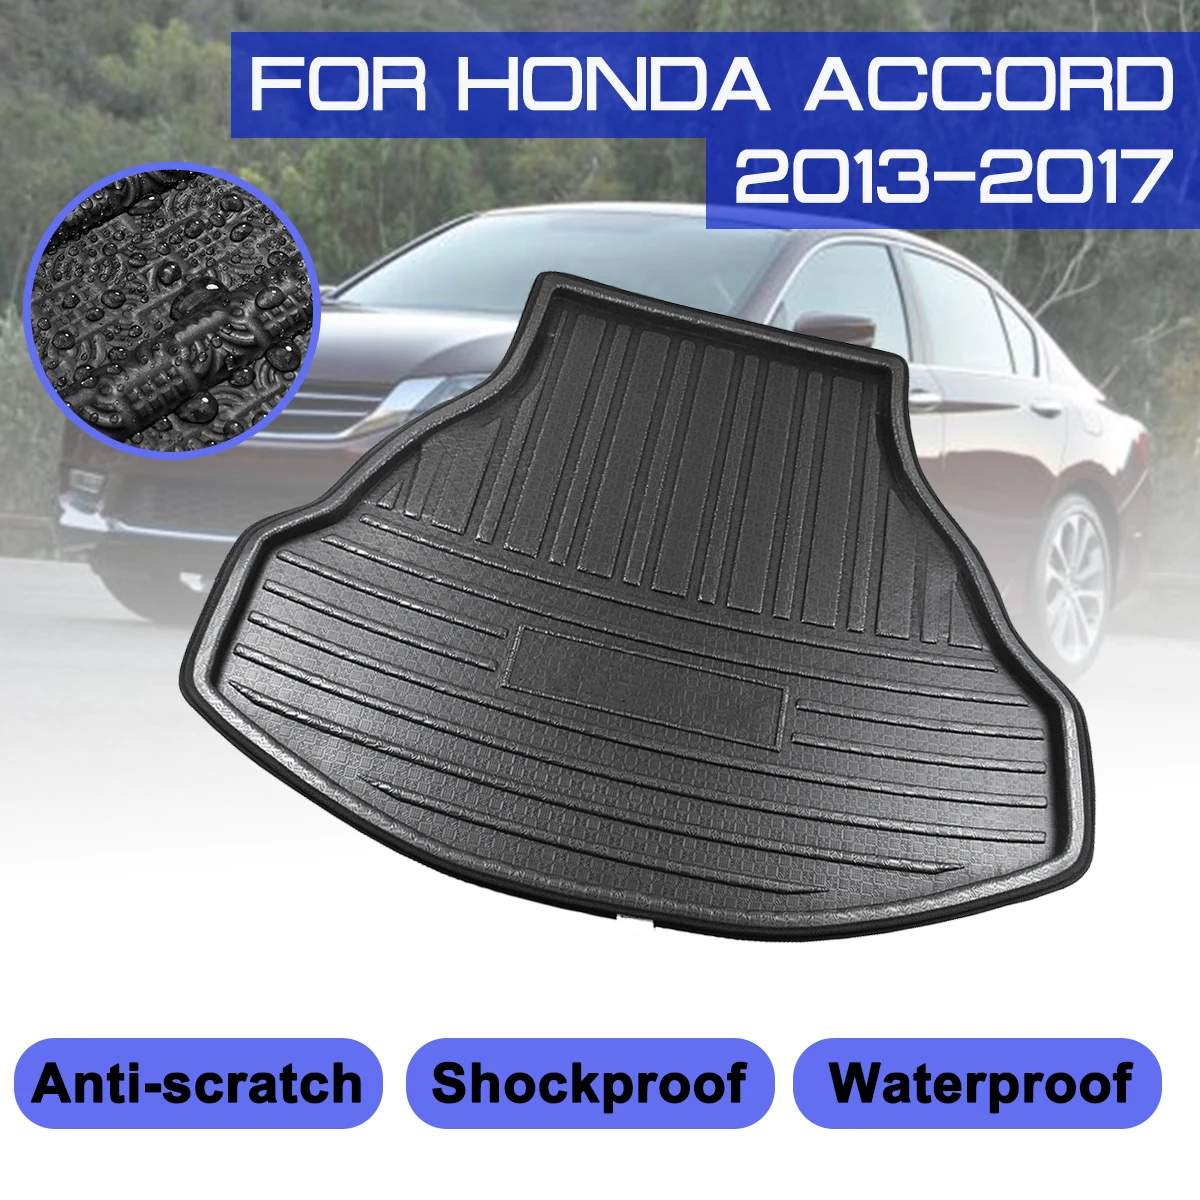 

Для Honda Accord 2013, 2014, 2015, 2016, 2017, коврик для багажника автомобиля, водонепроницаемые напольные коврики, коврик для защиты от грязи, подкладка для ...